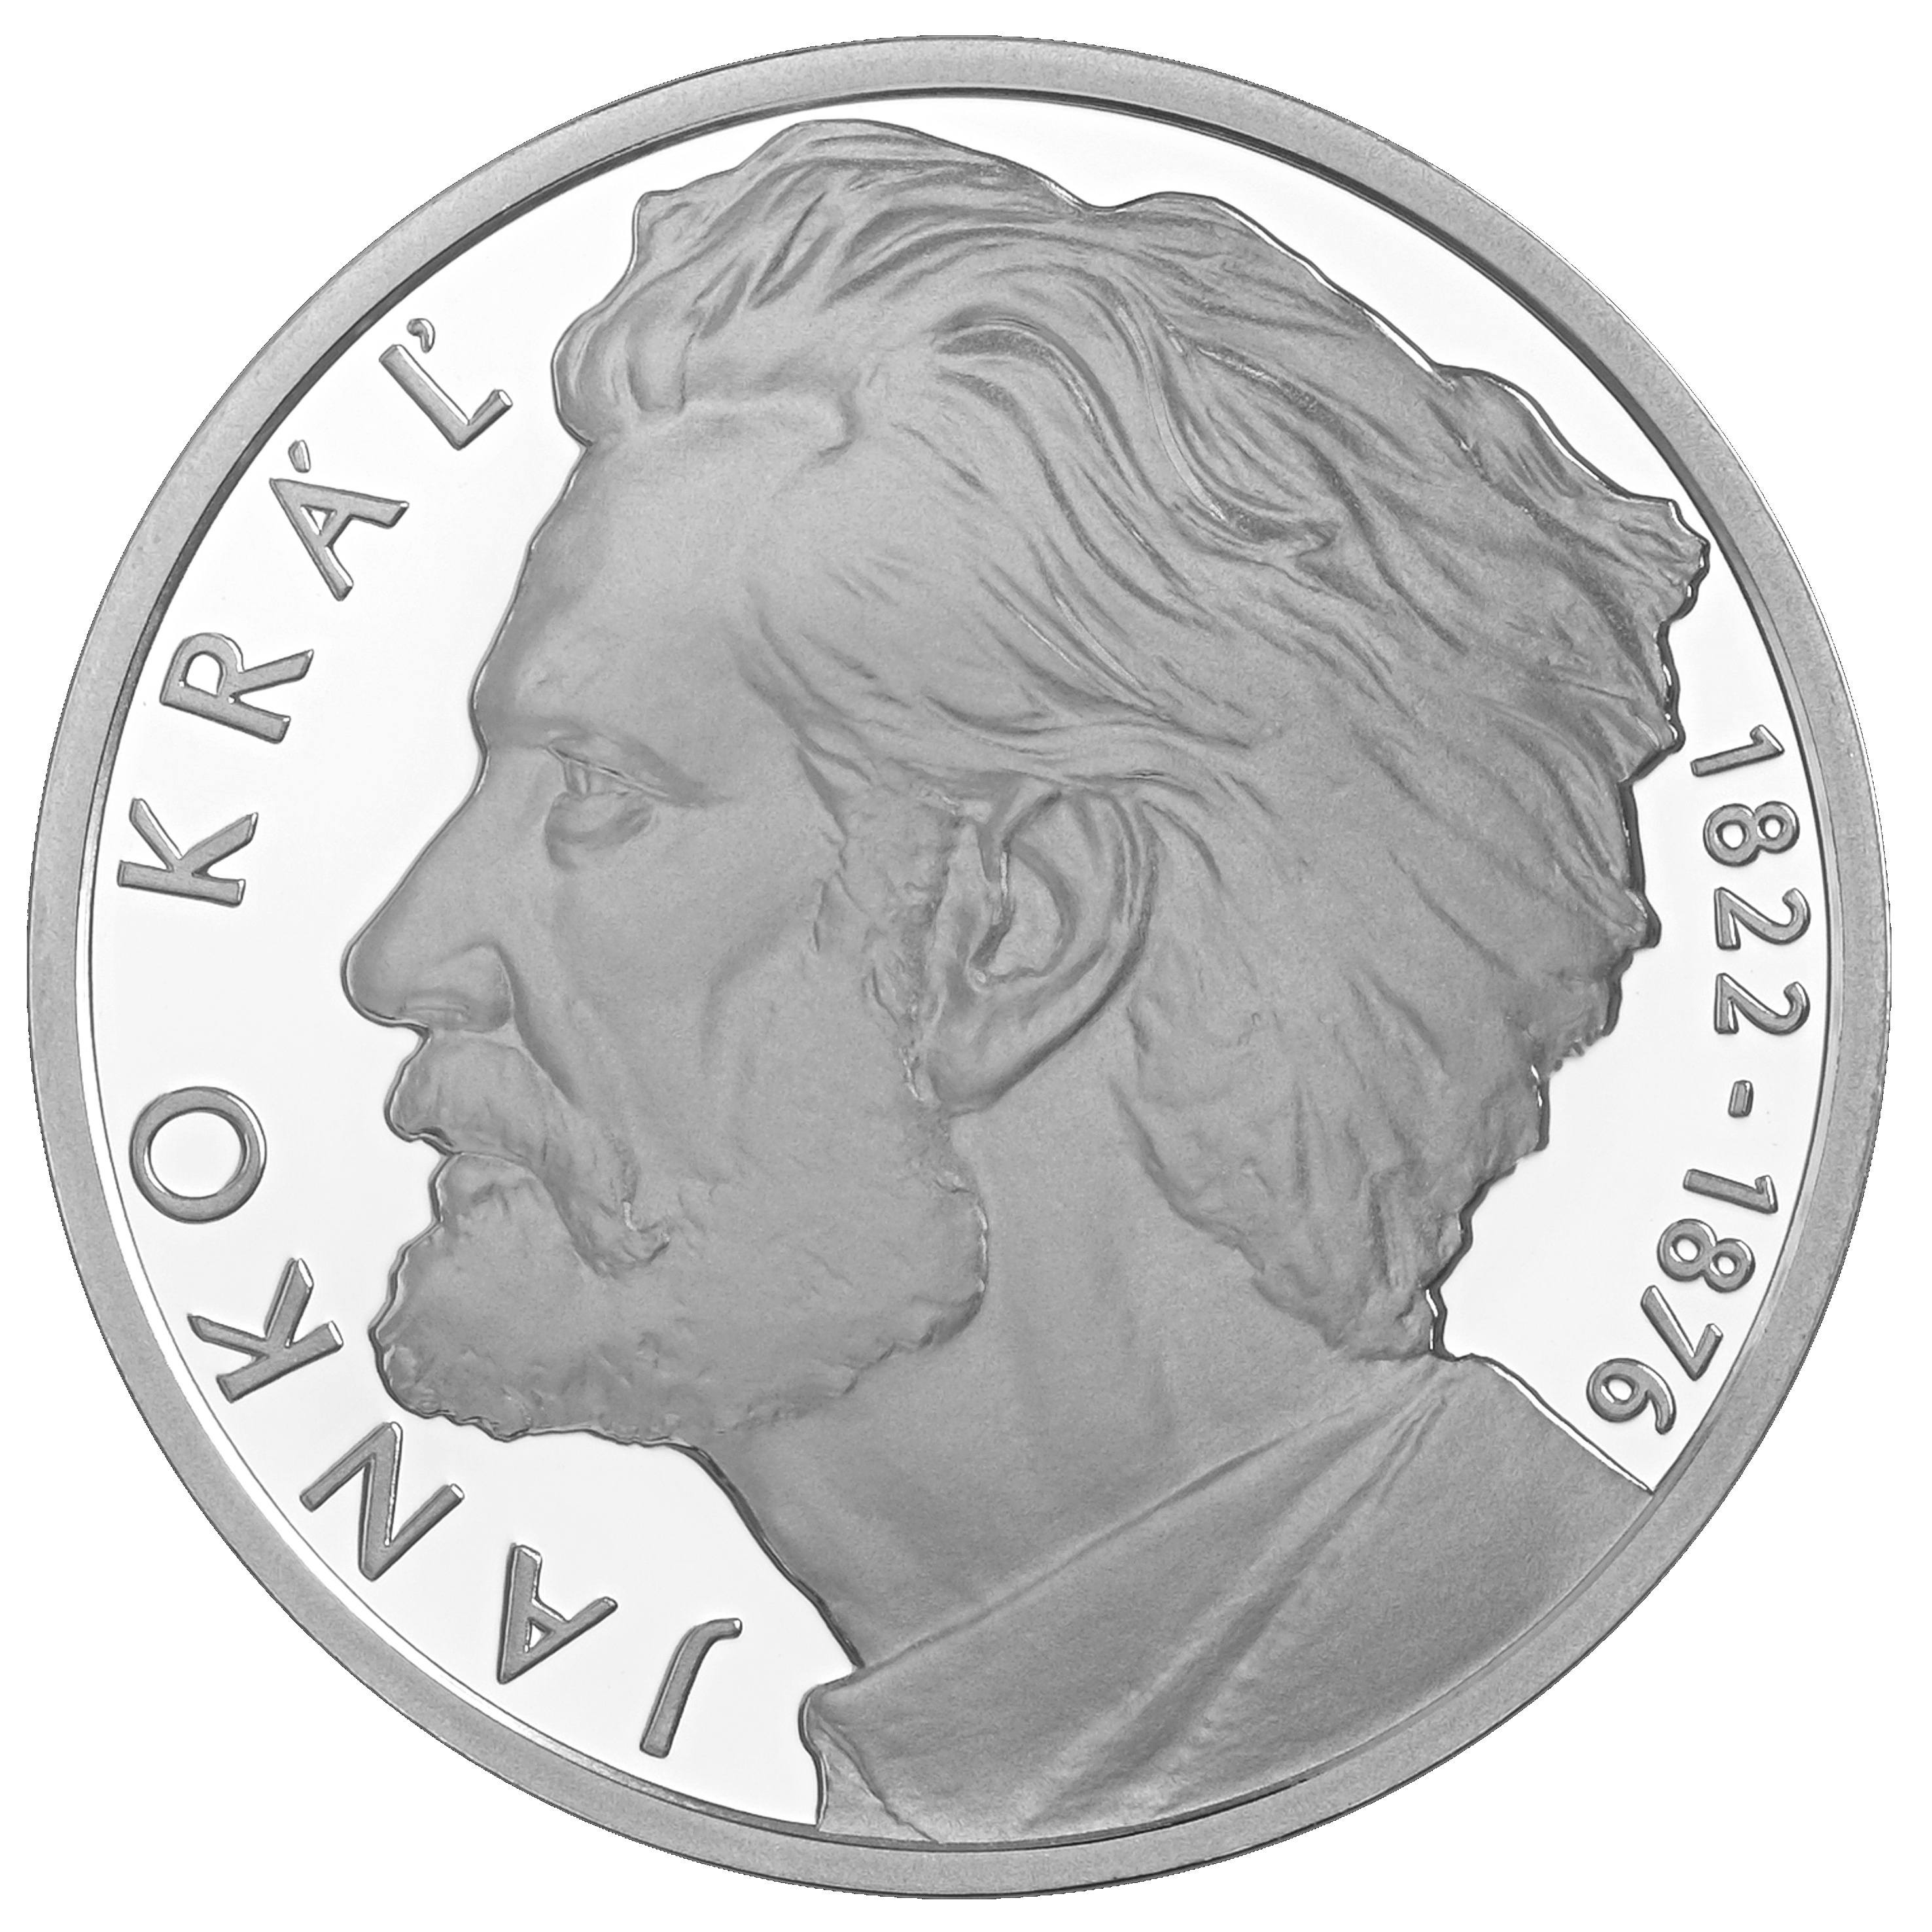 Strieborná zberateľská eurominca v nominálnej hodnote 10 eur 200. výročie narodenia Janka Kráľa